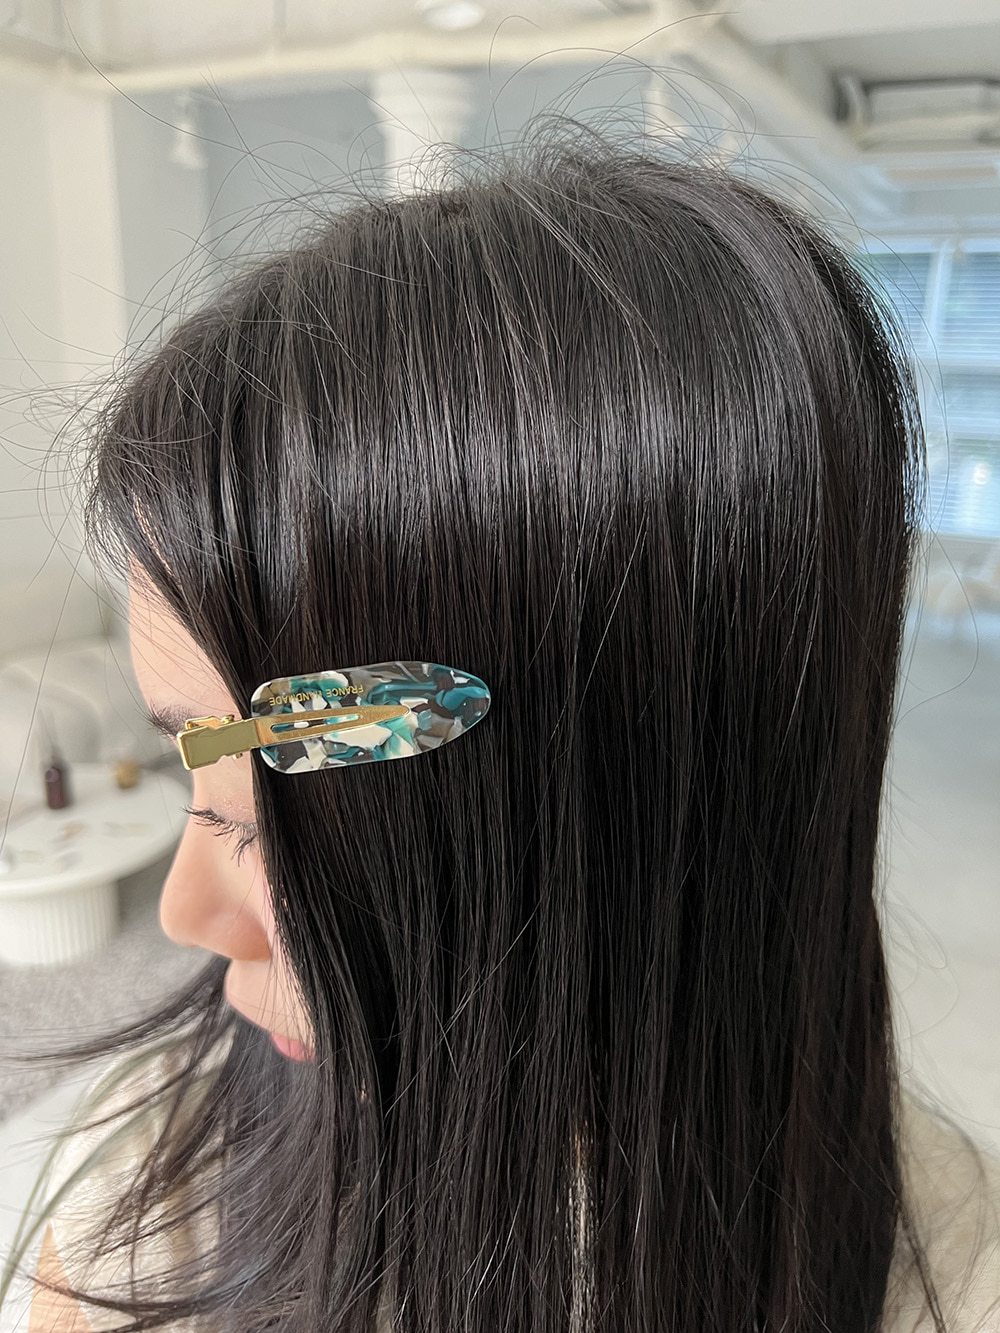 Pad hair-pin (9color)